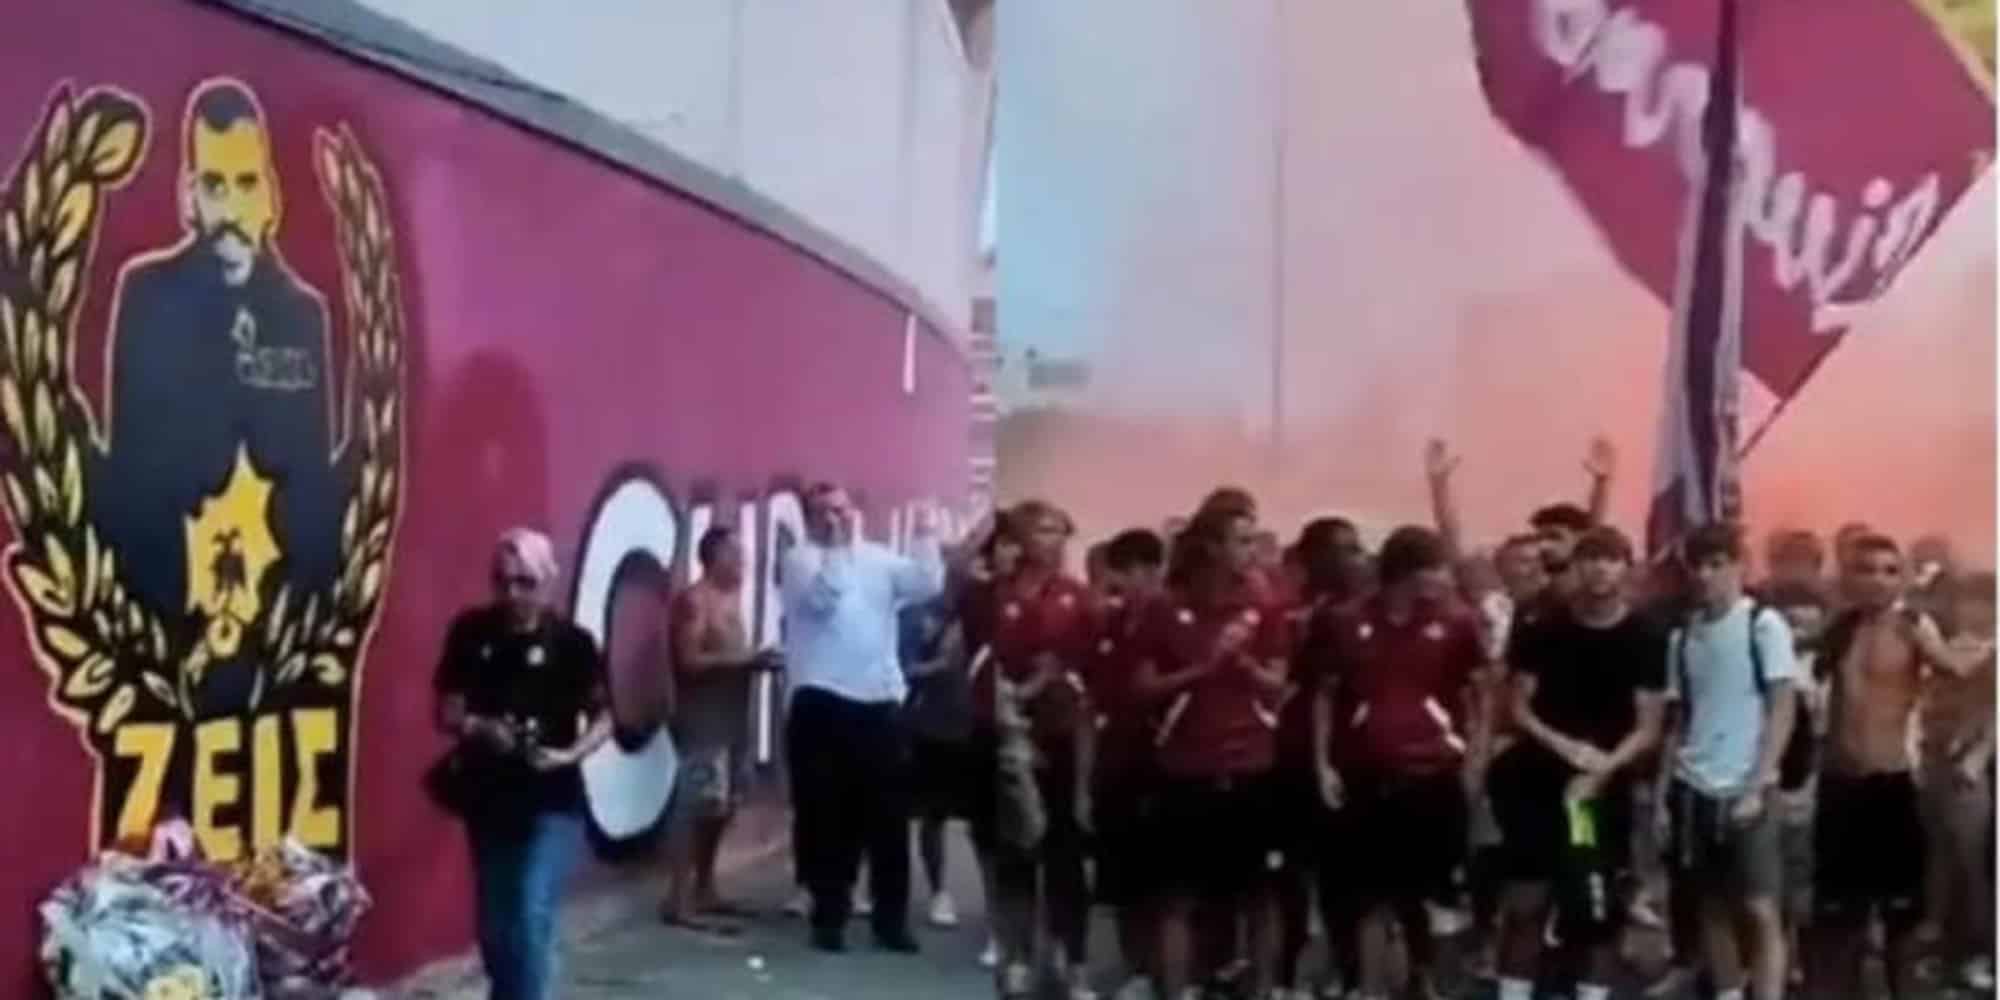 Παίκτες και οπαδοί της Λιβόρνο φώναξαν συνθήματα για τον οπαδό της ΑΕΚ, Μιχάλη Κατσουρή